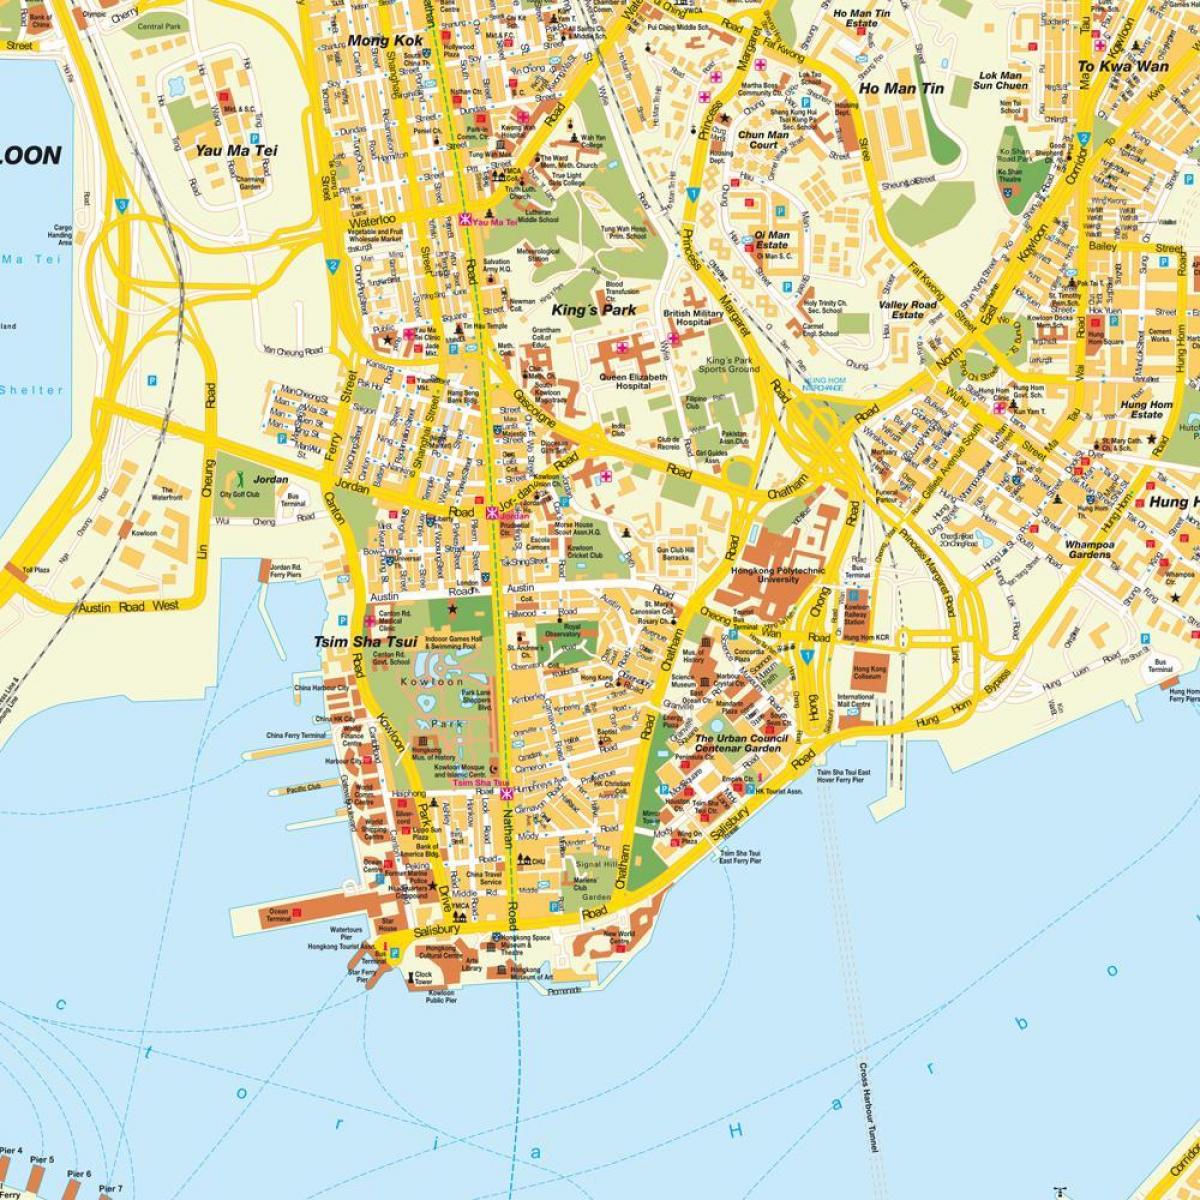 Hong Kong hiriko mapa